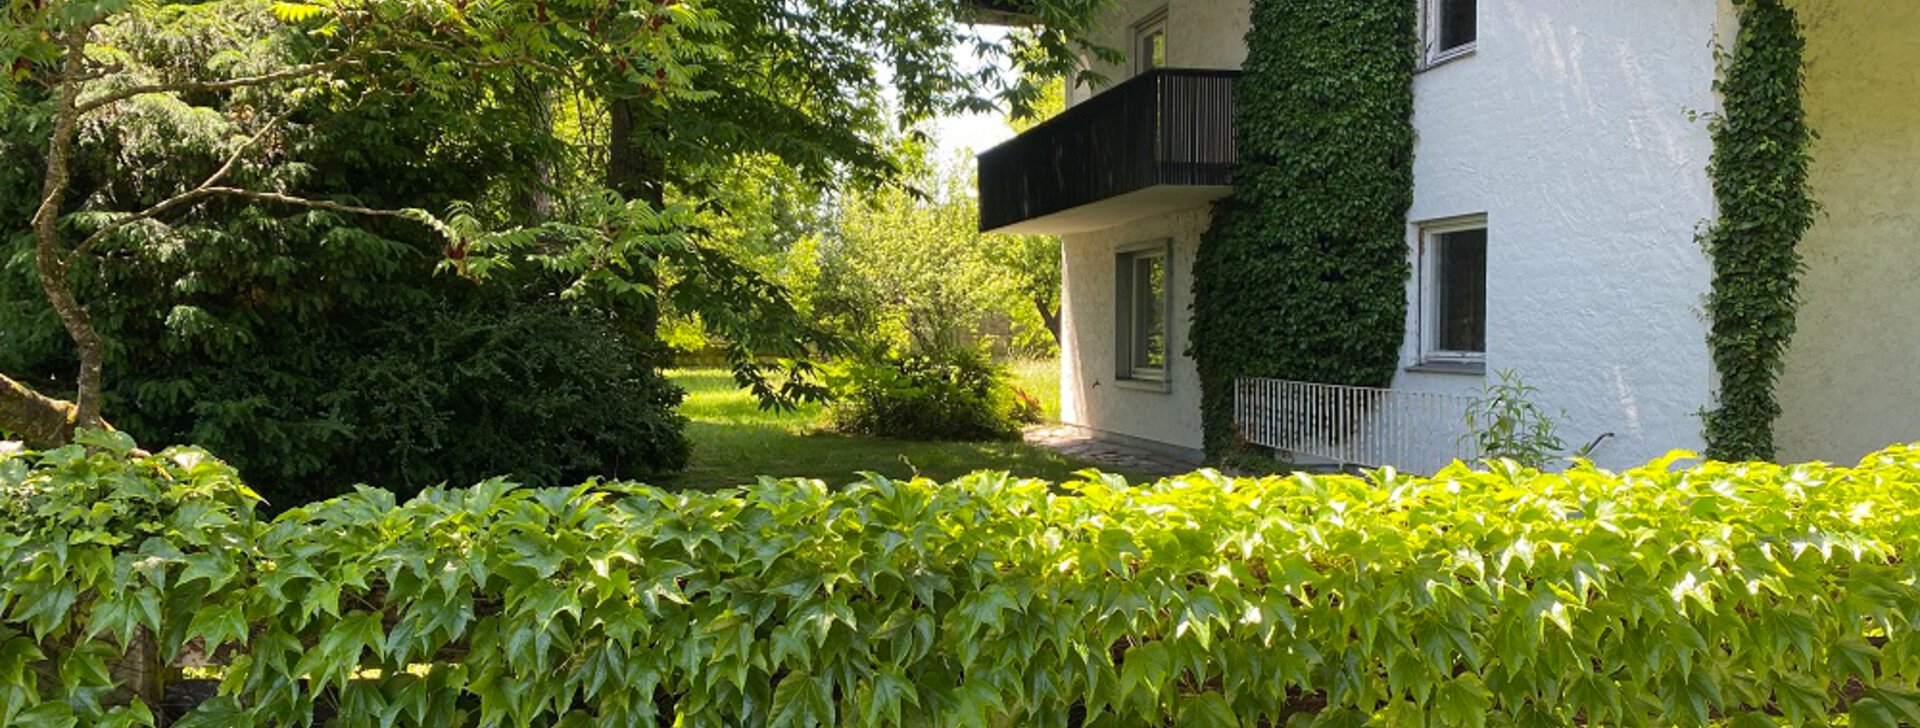 Garten, Grundstück mit Einfamilienhaus, Immobilie kaufen, Raubling  | © HausBauHaus GmbH